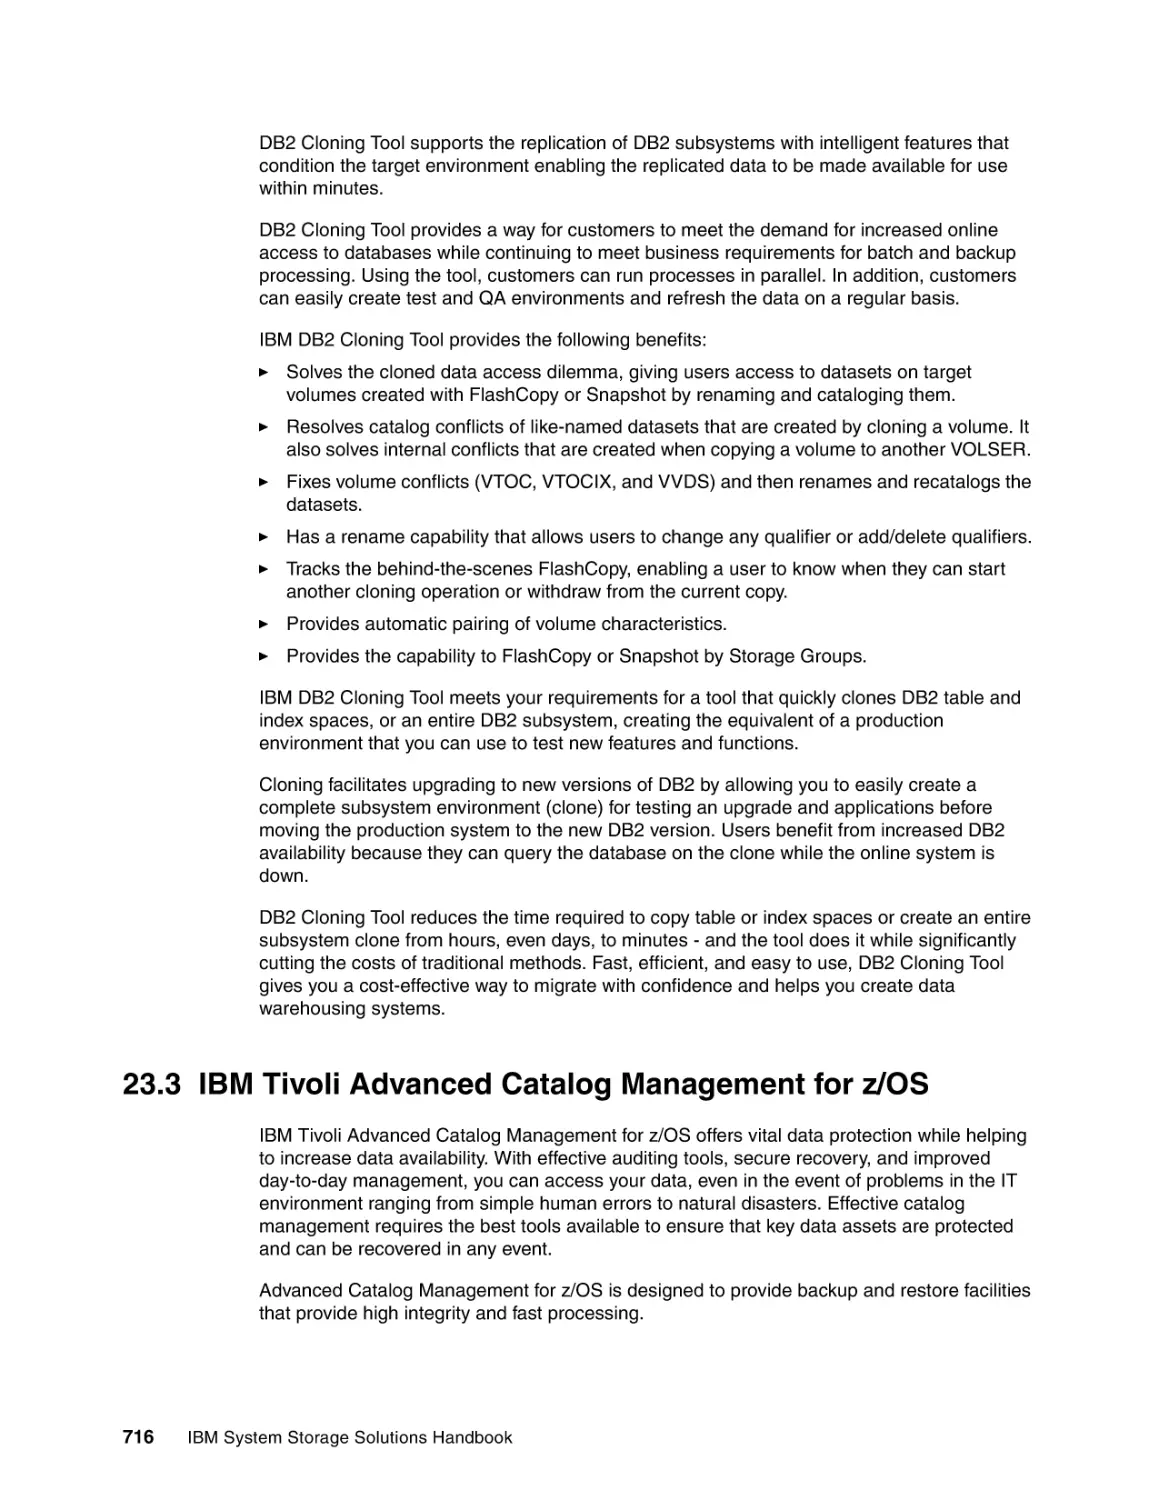 23.3 IBM Tivoli Advanced Catalog Management for z/OS